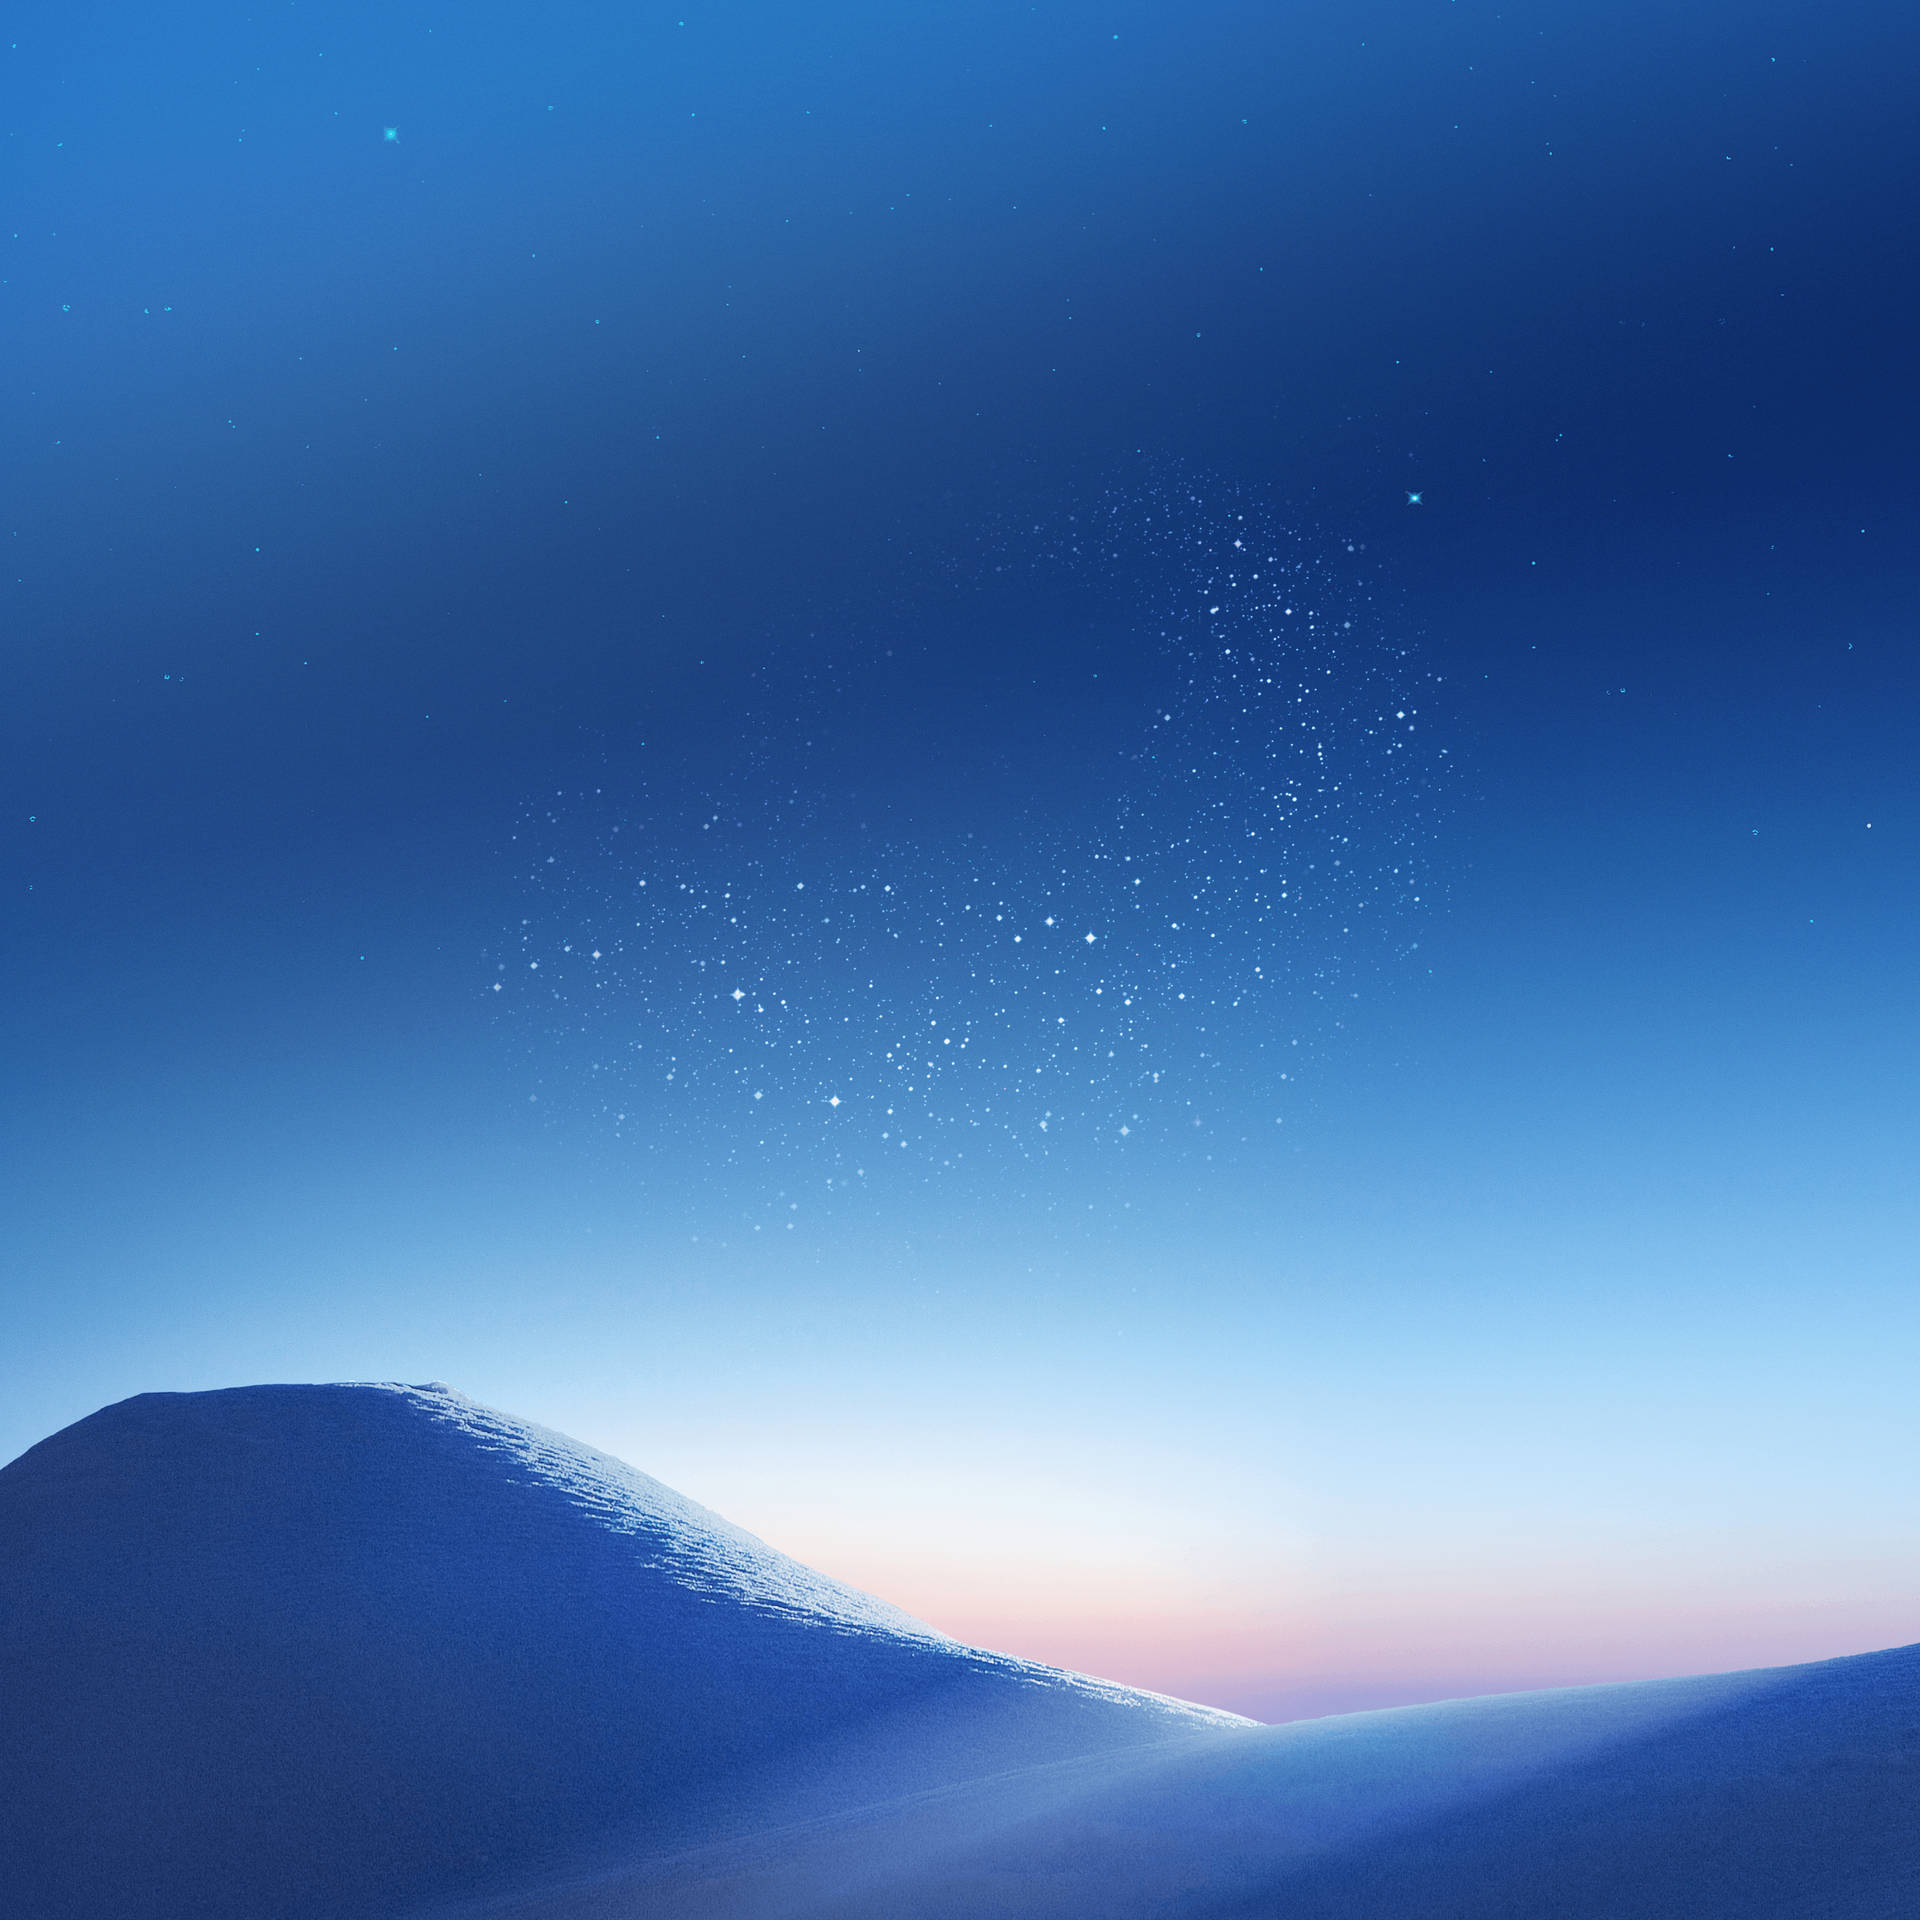 Qhd Snowy Mountain On A Soft Sky